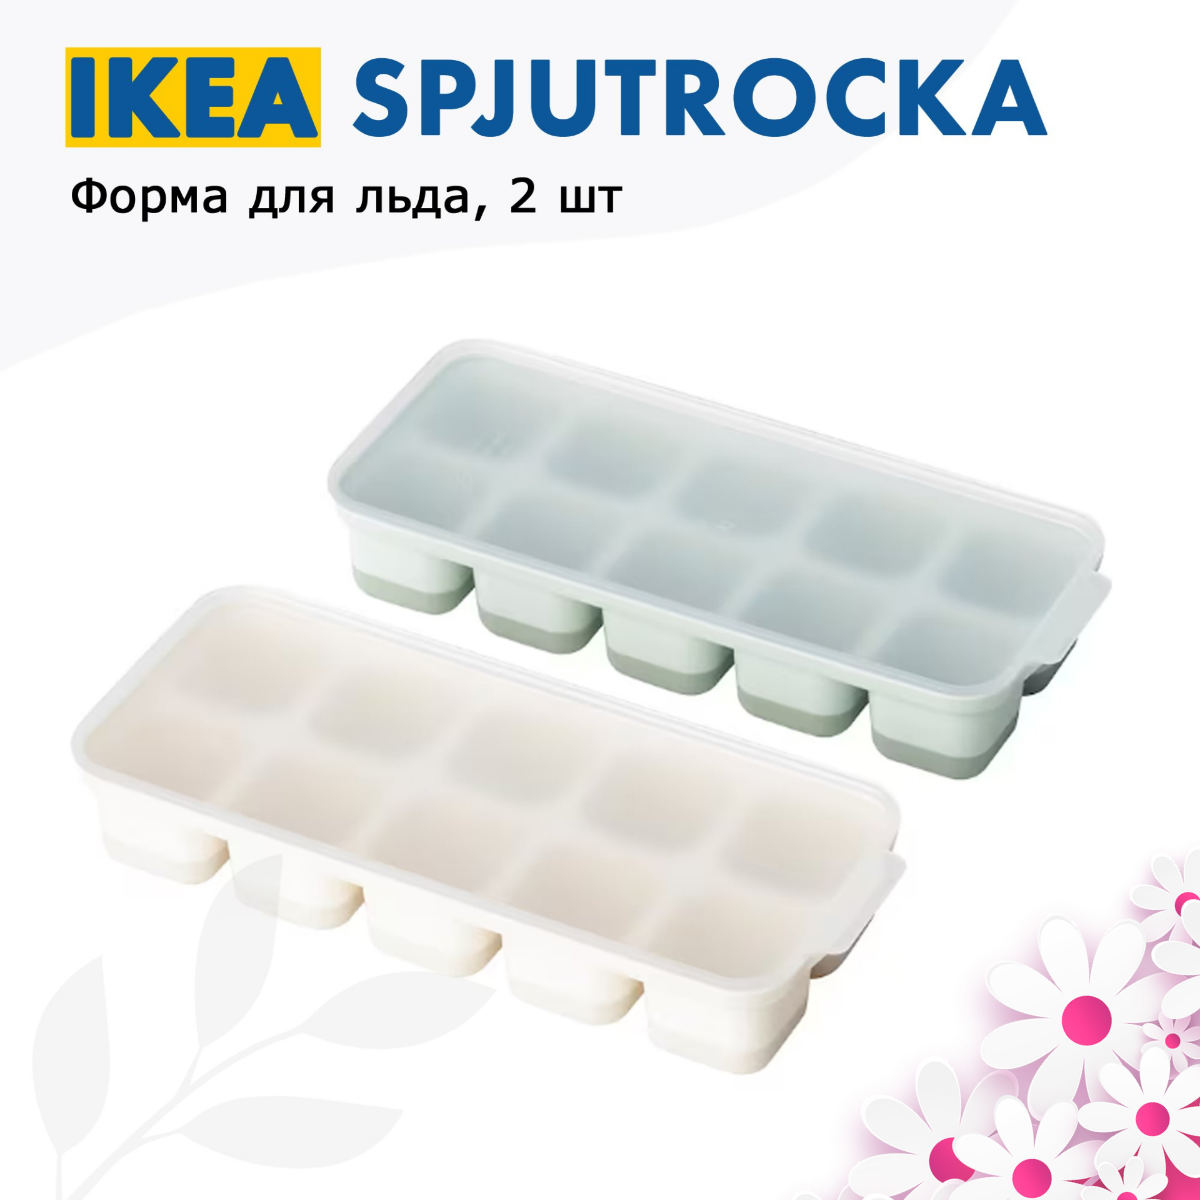 IKEA. Форма для льда, шоколада, леденцов и кондитерских украшений, 2 шт "SPJUTROCKA"